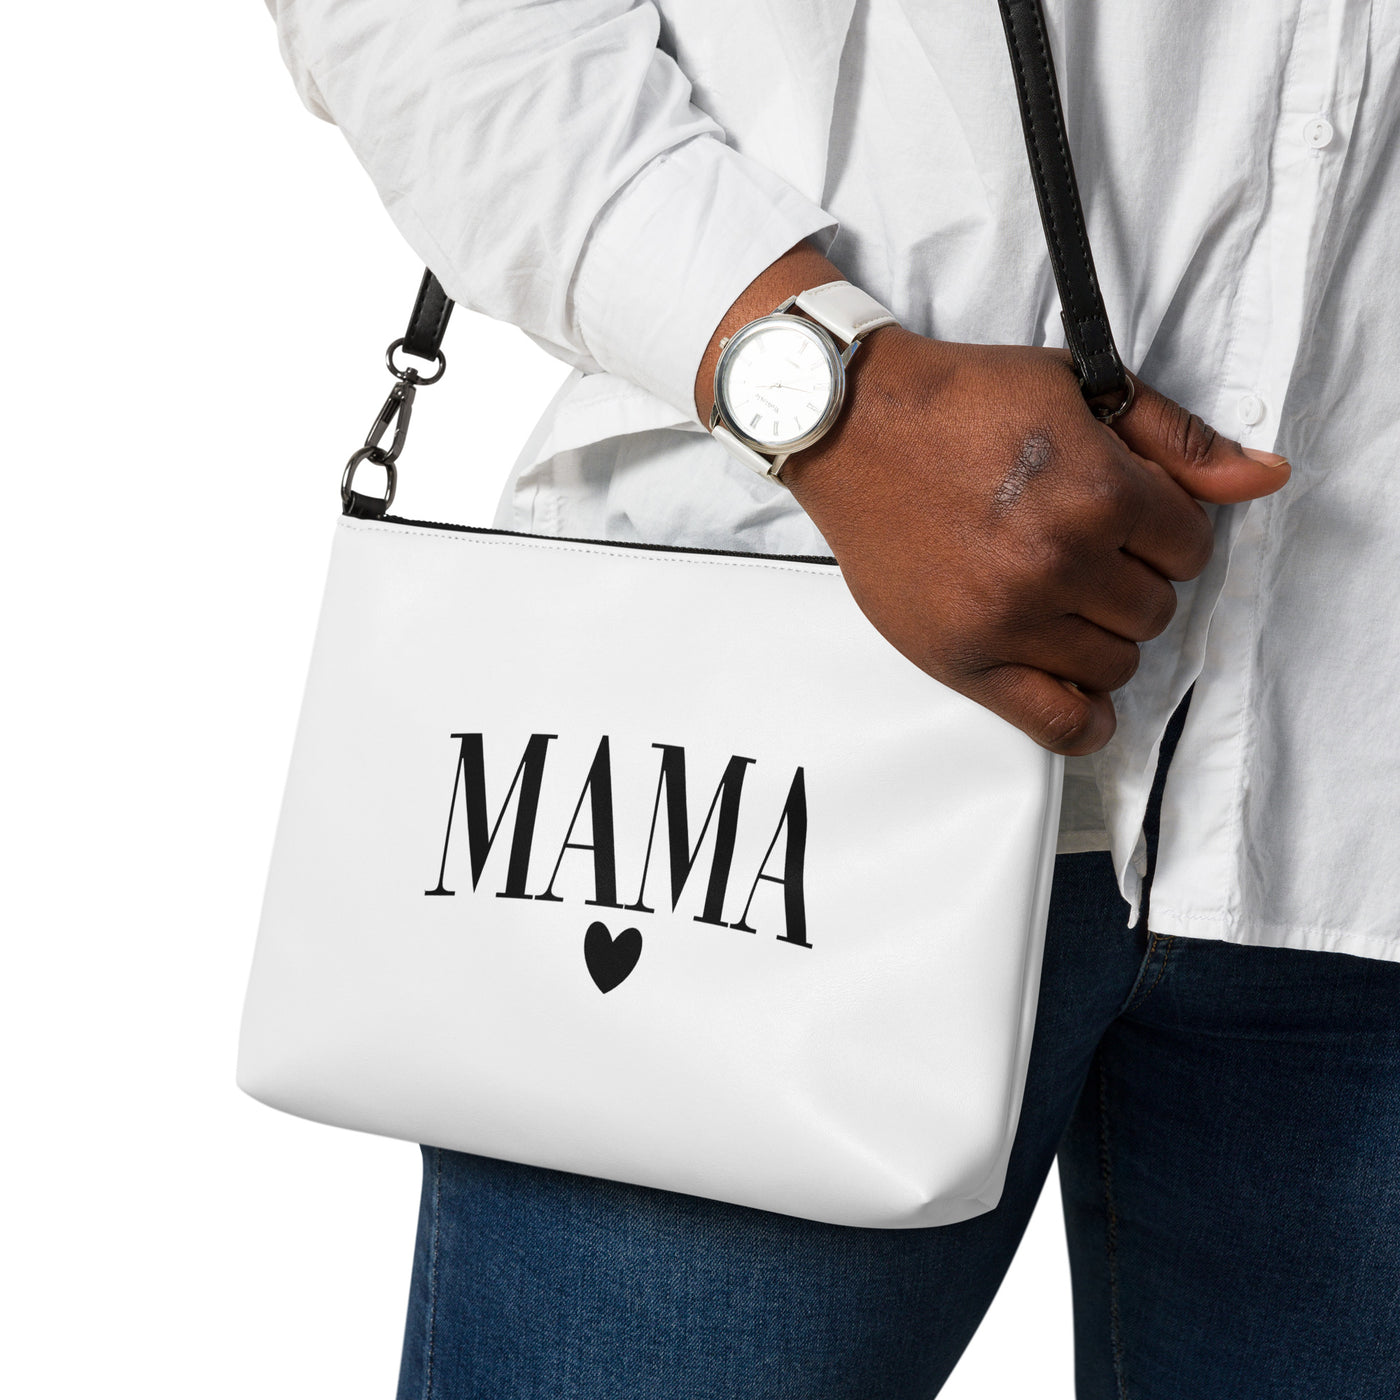 'Mama Heart' crossbody bag